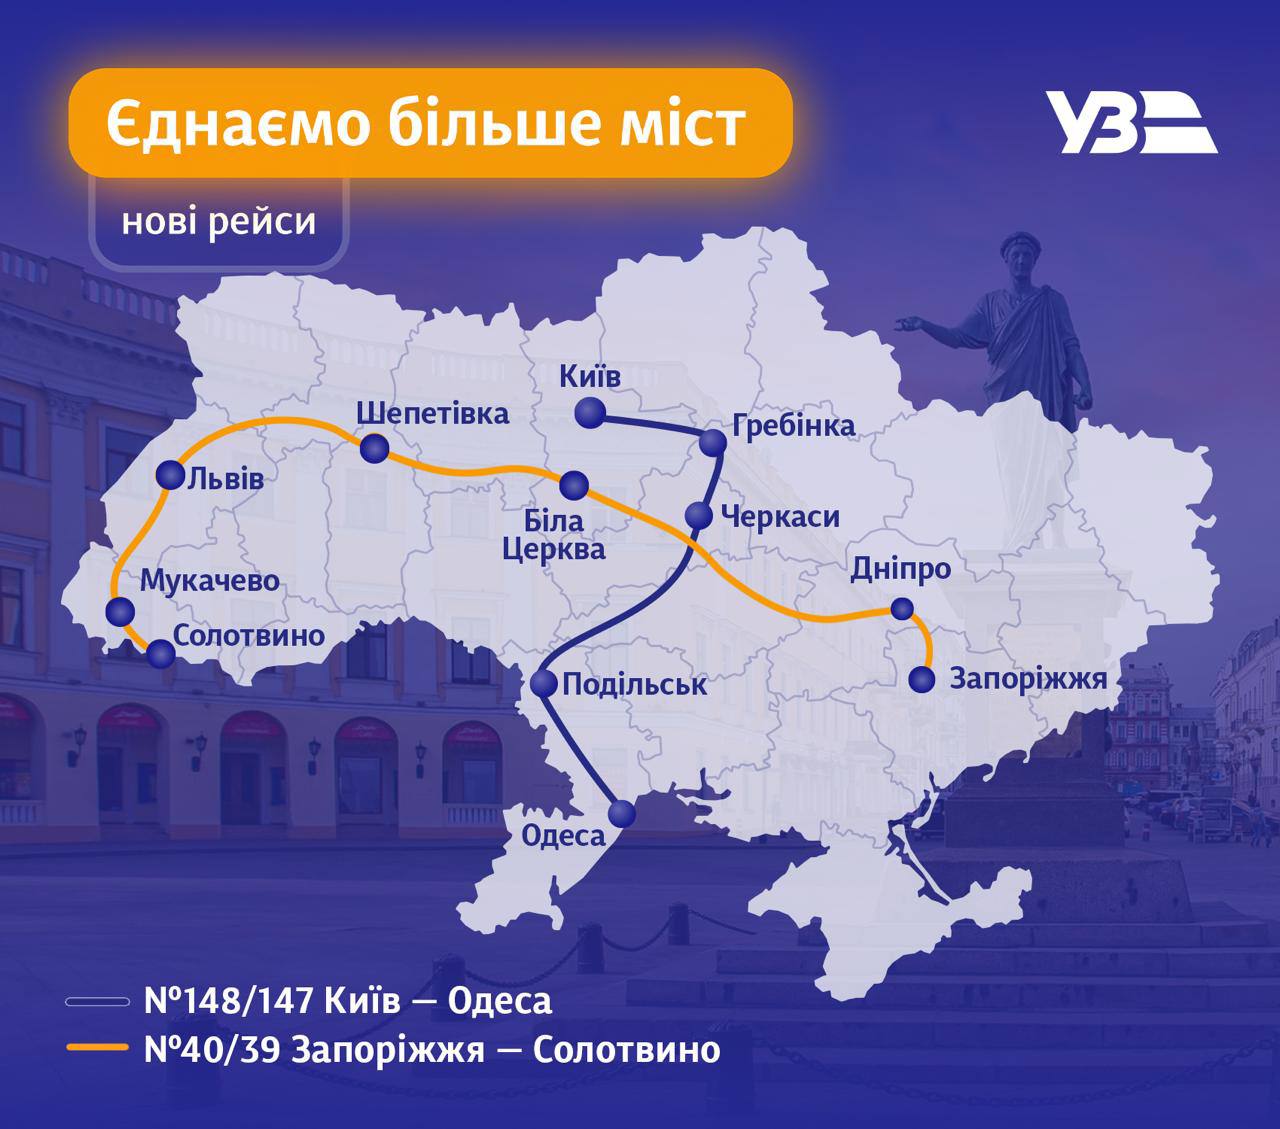 Нові рейси поїздів від Укрзалізниці